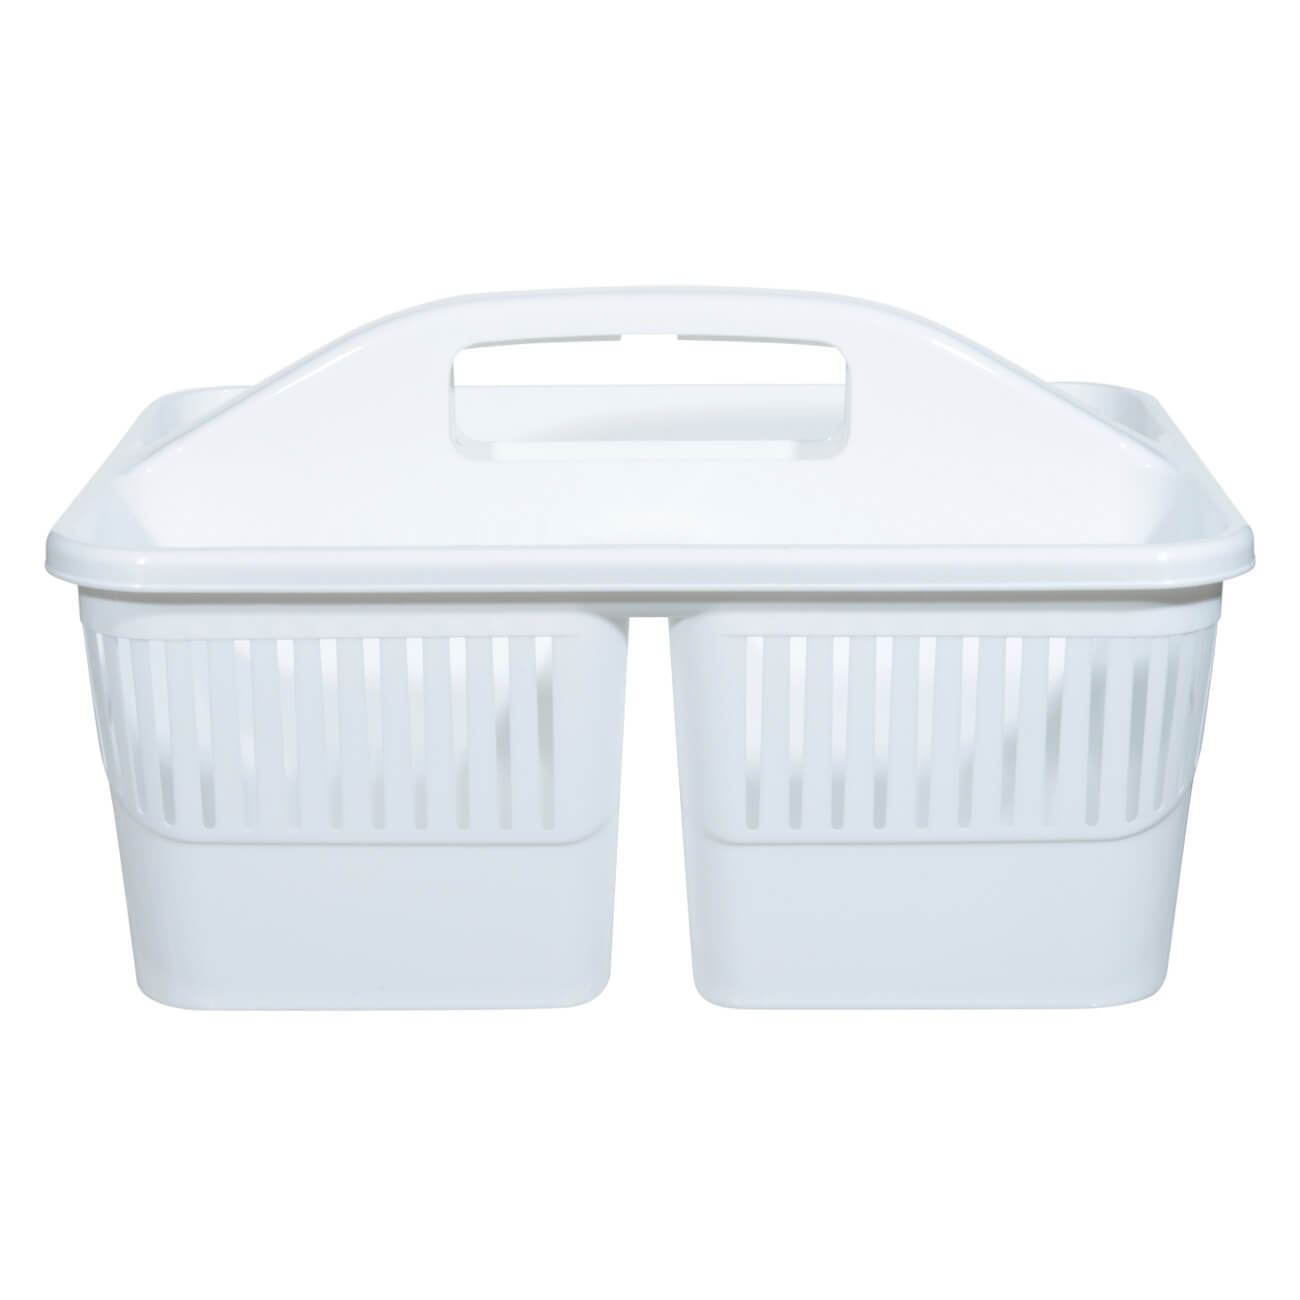 Органайзер для моющих средств, 23х30 см, переносной, пластик, белый, Compact изображение № 1